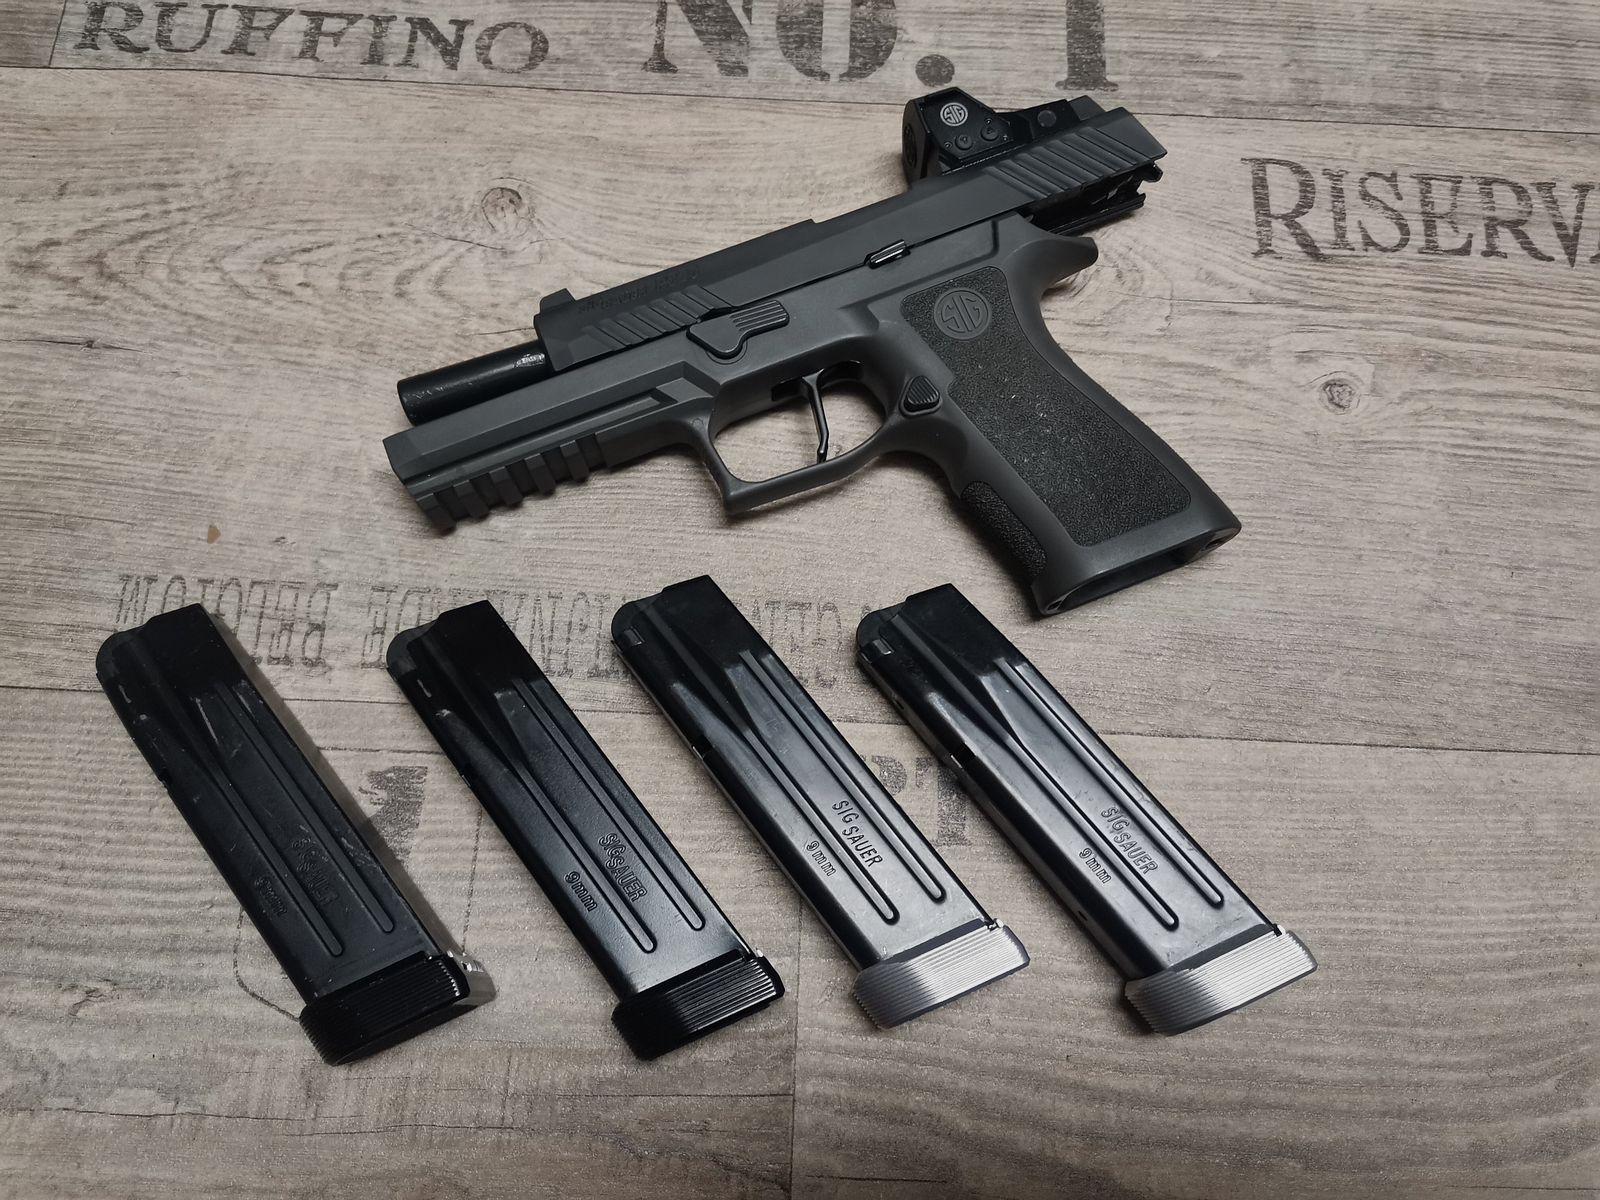 Sig Sauer P320 RX Full Size 9mm Luger halbautomatische Pistole IPSC Tungsten Grip Apex Trigger